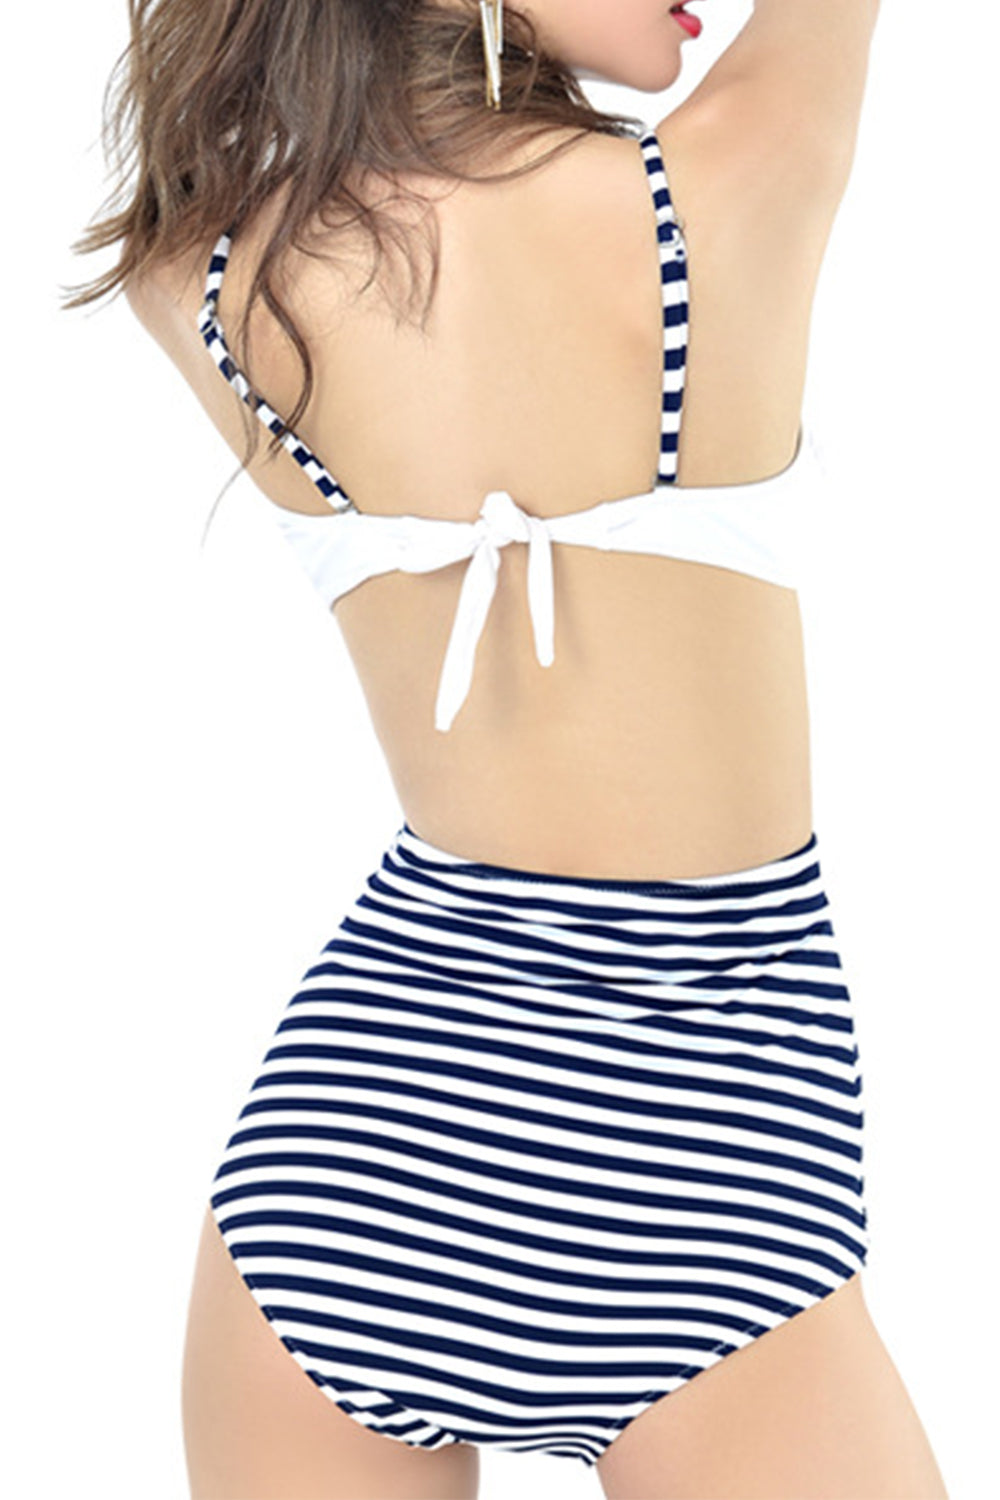 Iyasson Stripe Pattern High-waisted fit Bikini Sets